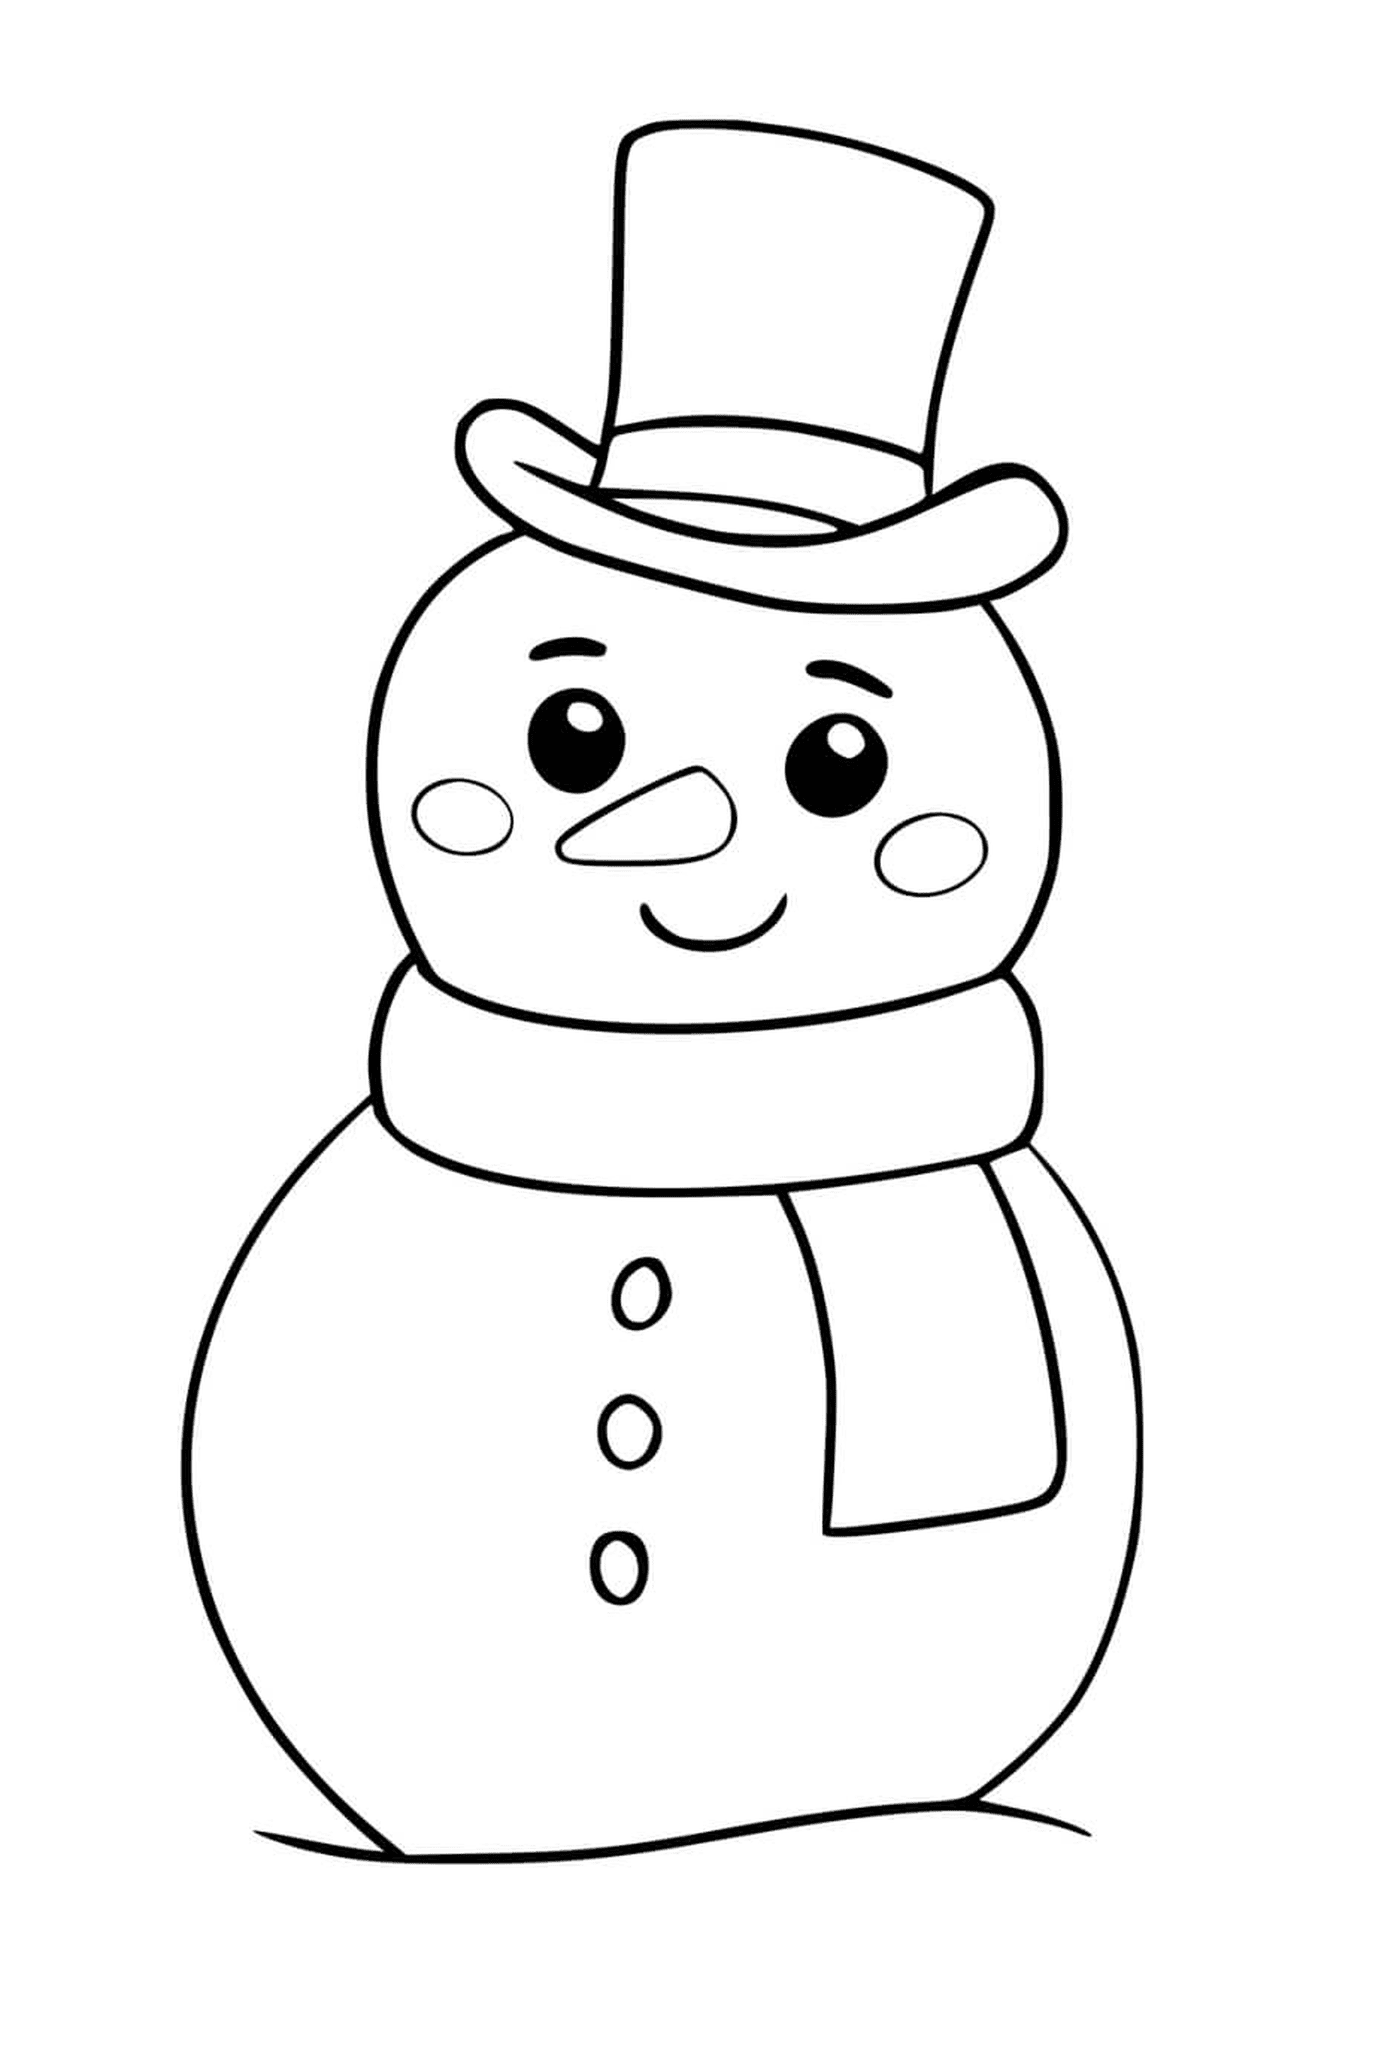   Un bonhomme de neige kawaii souriant en hiver 